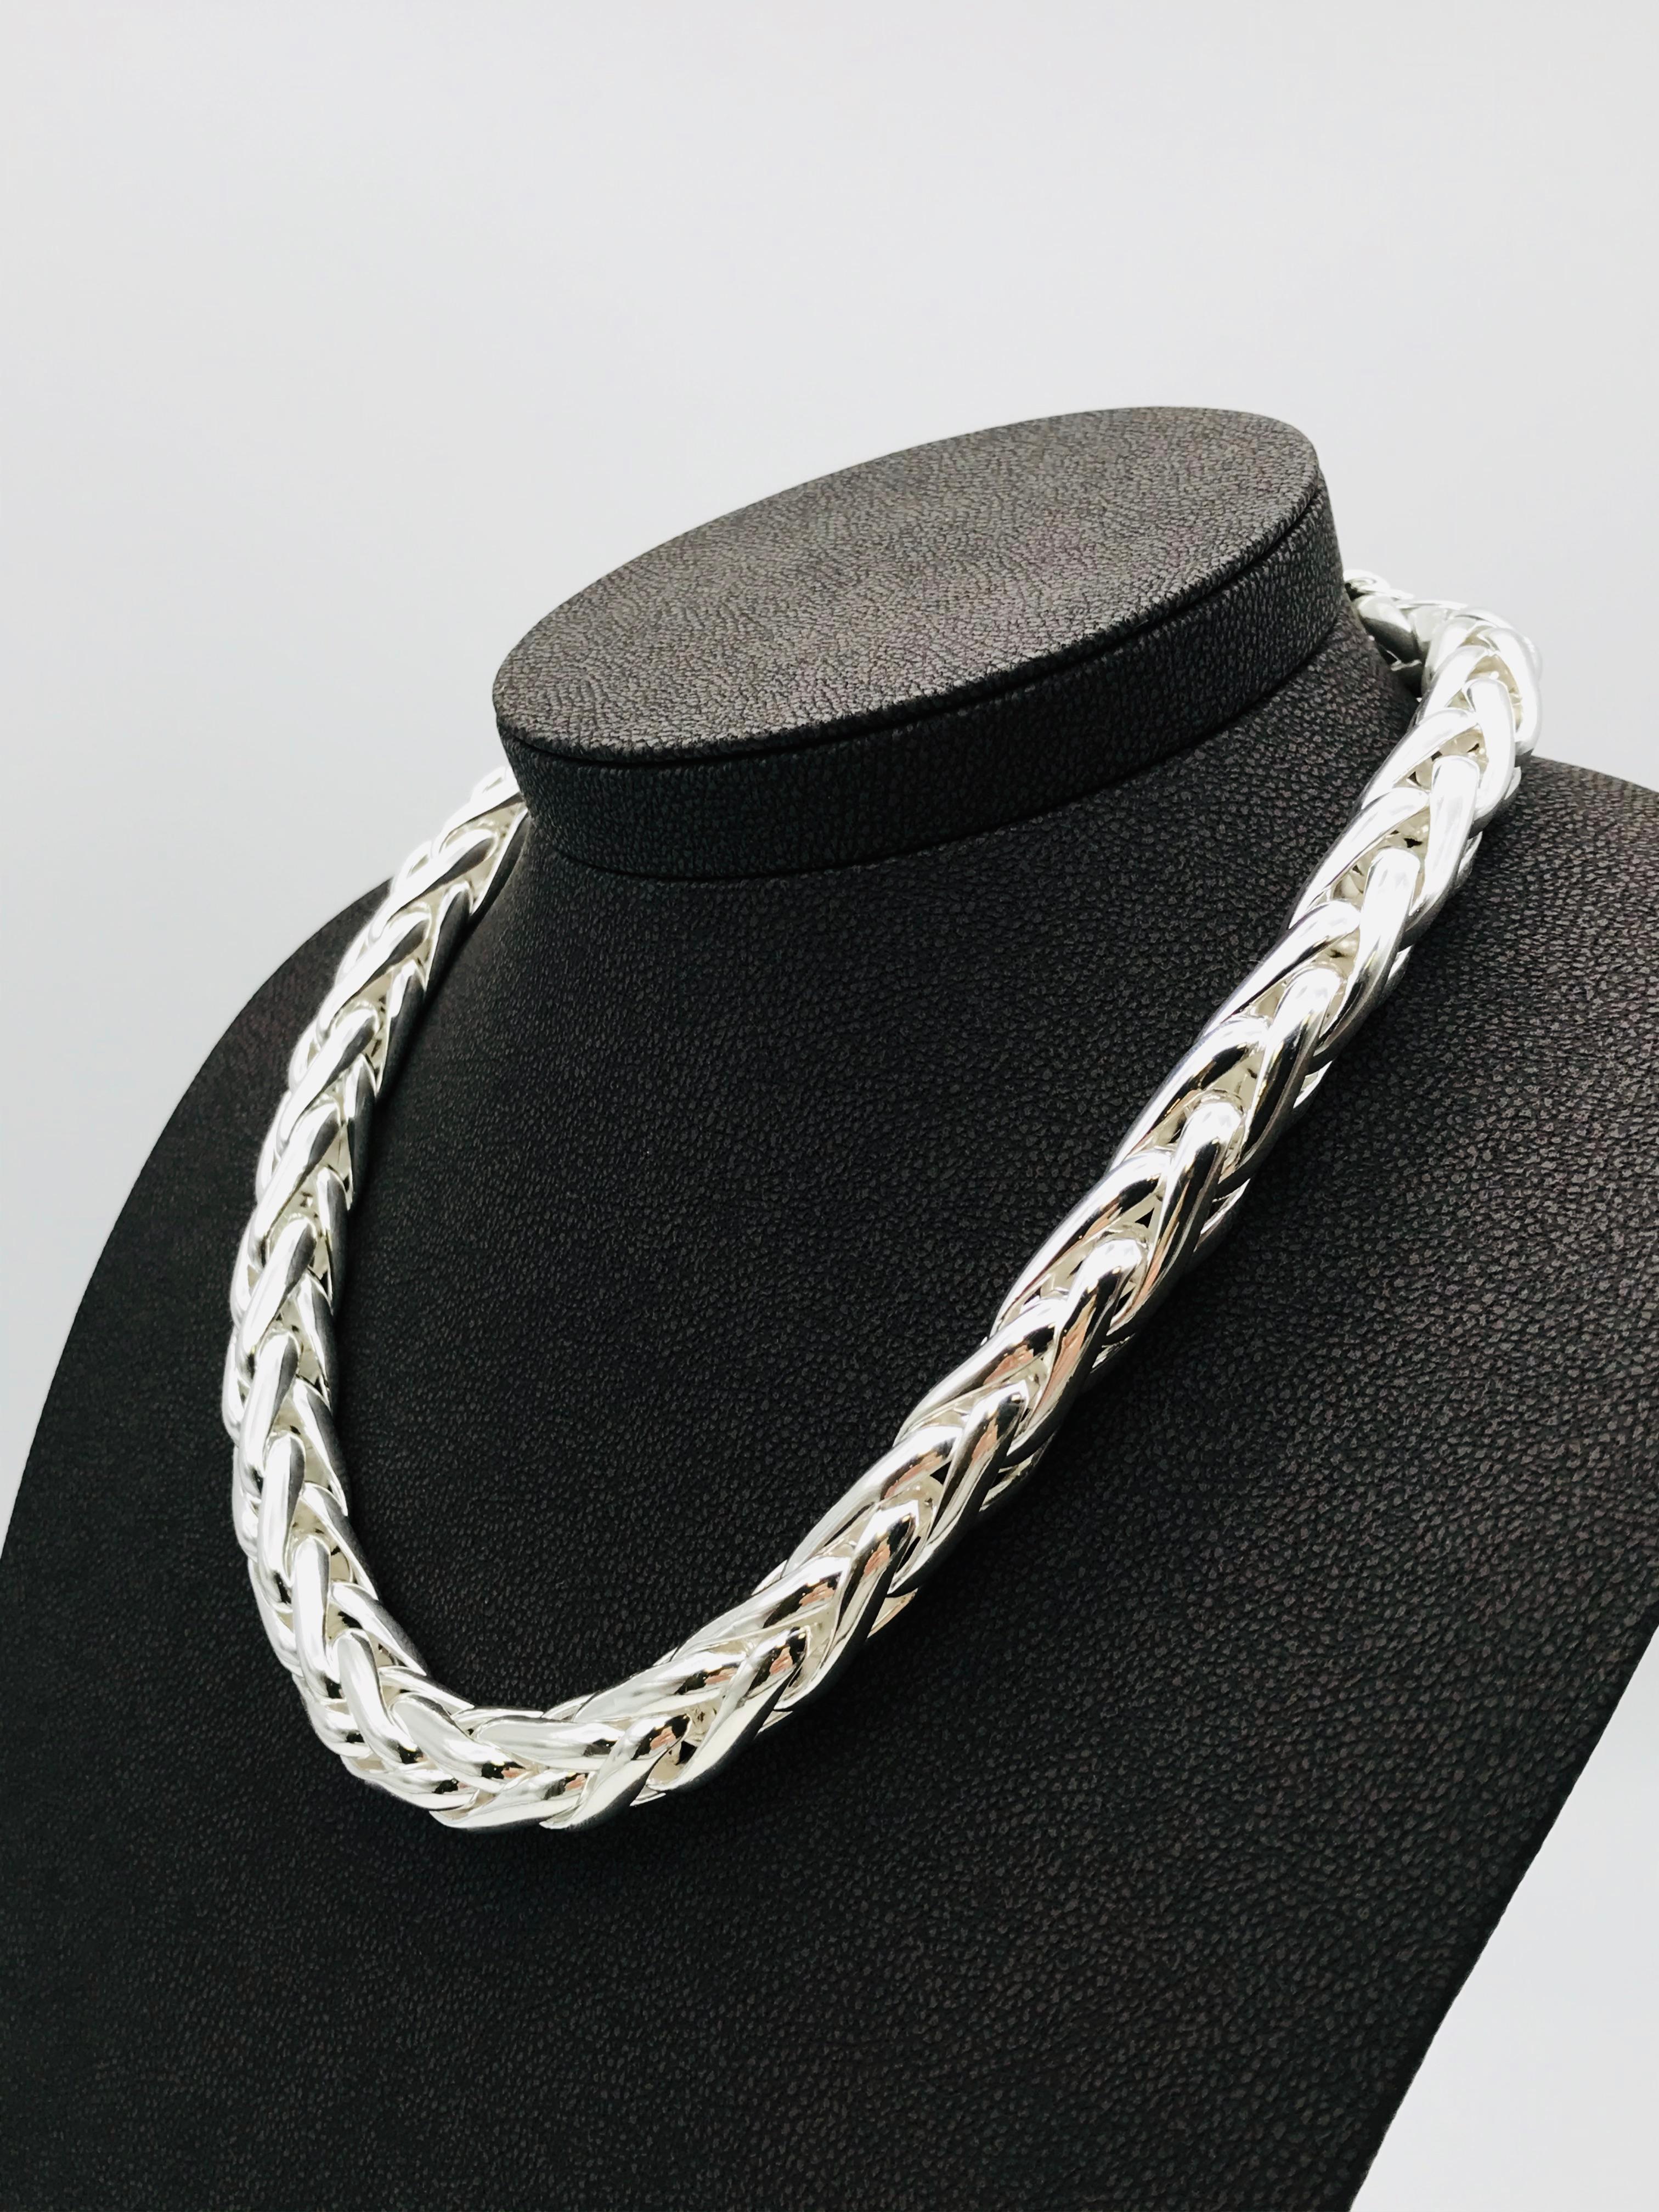 braided silver chain